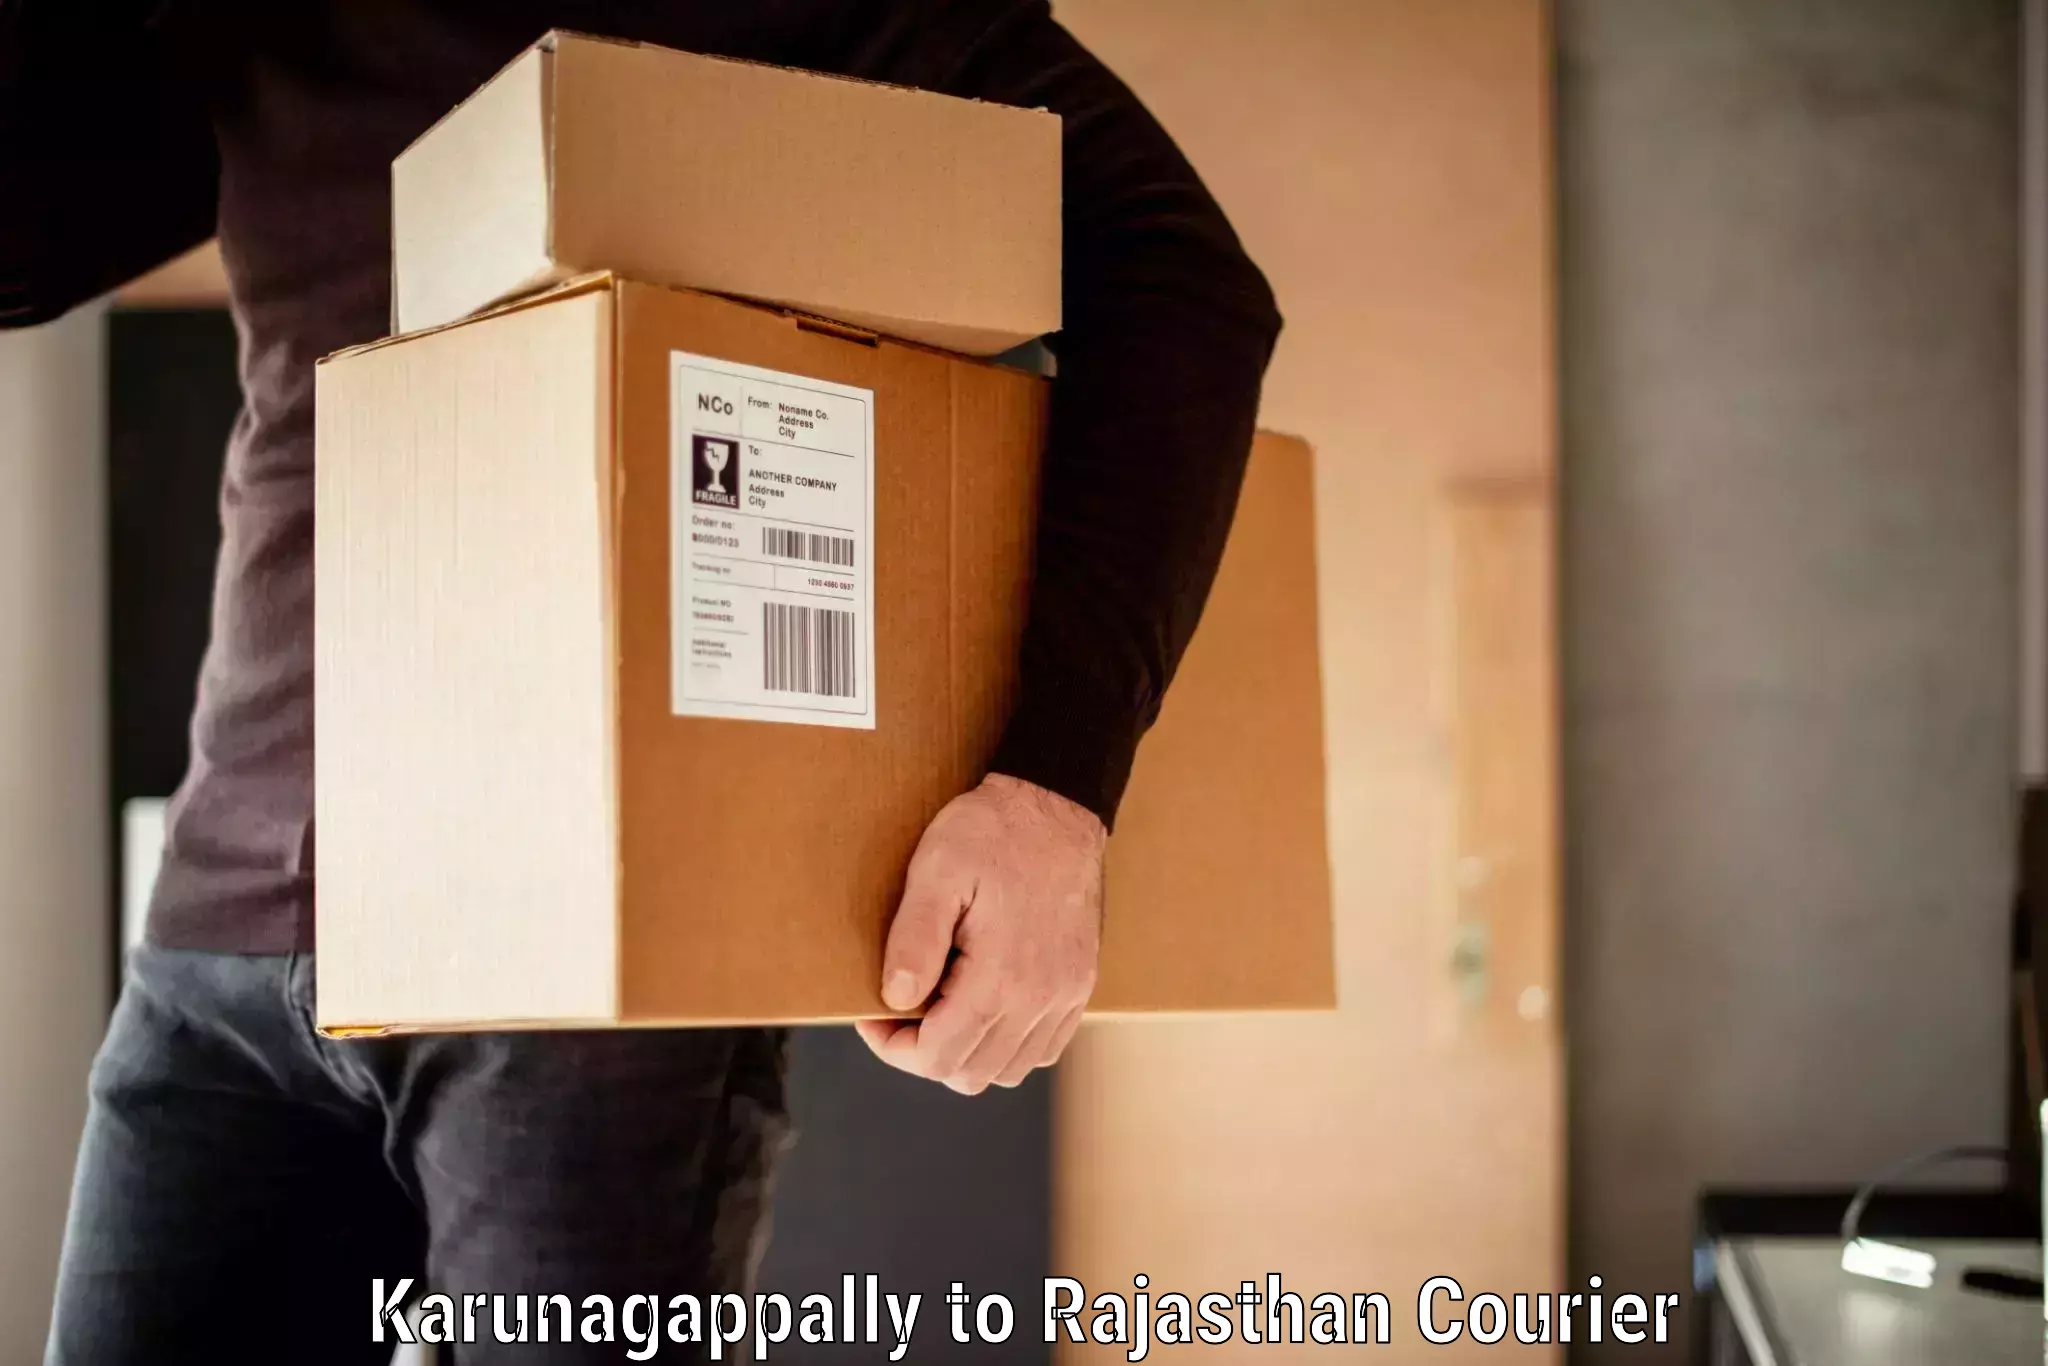 Baggage transport scheduler Karunagappally to Rajasthan